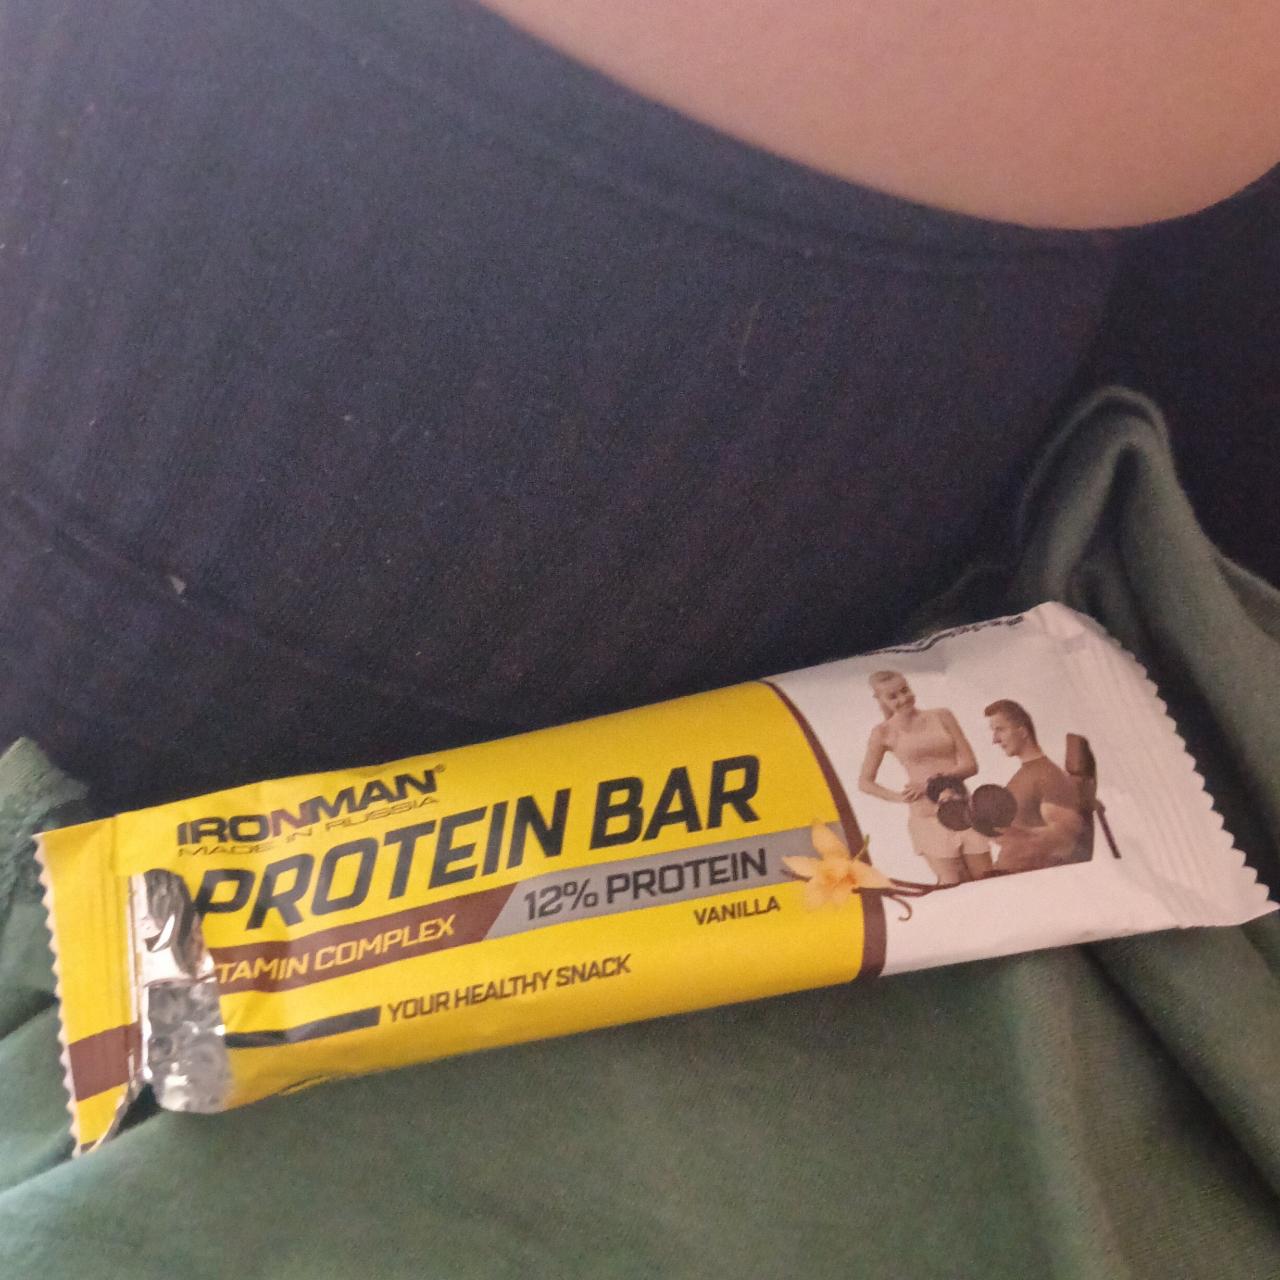 Фото - протеиновый батончик витаминнй комплекс со вкусом ванили Ironman